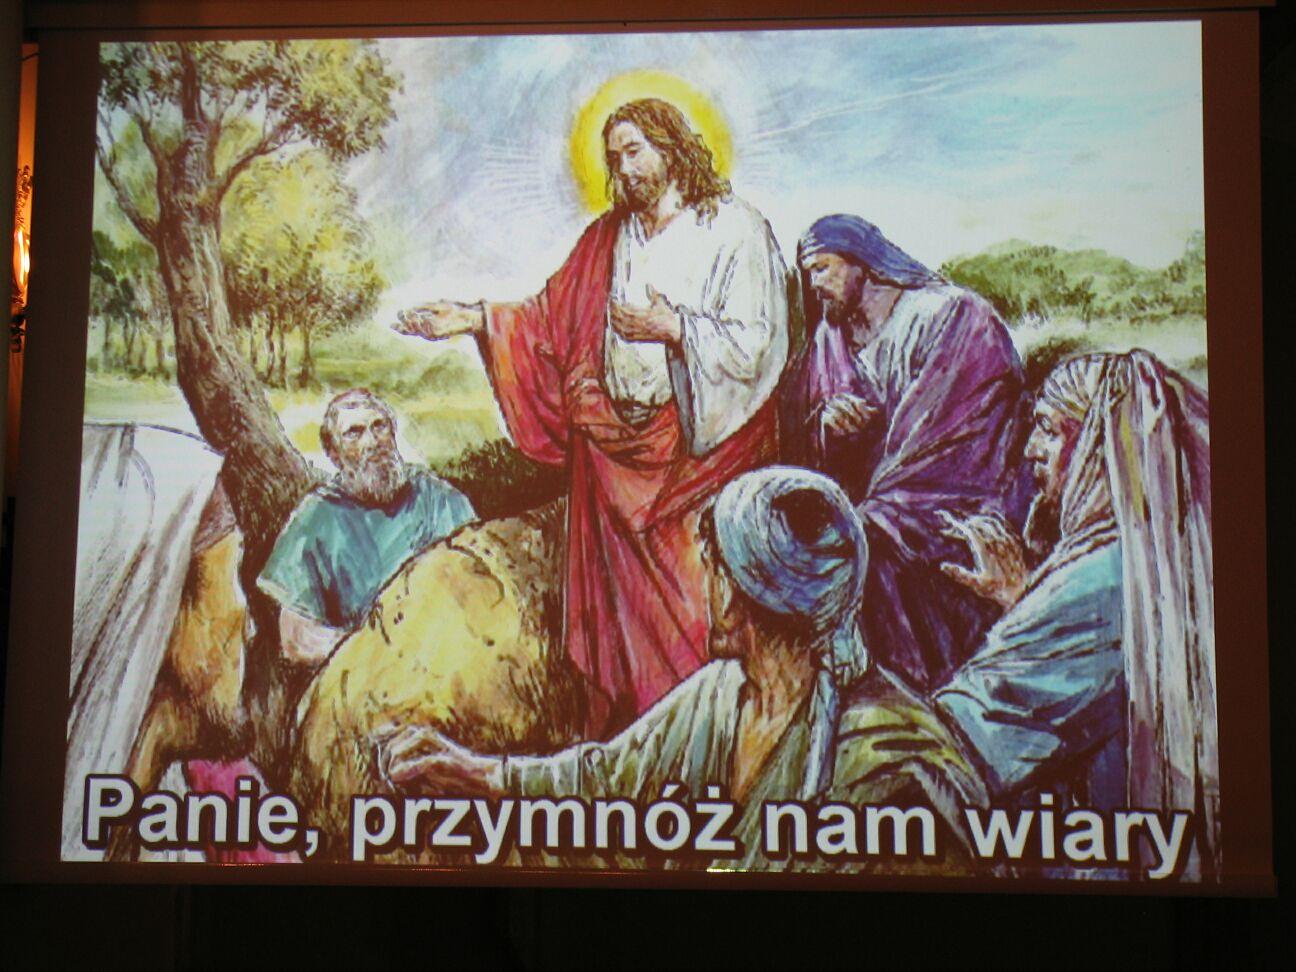 slajdy.net.pl